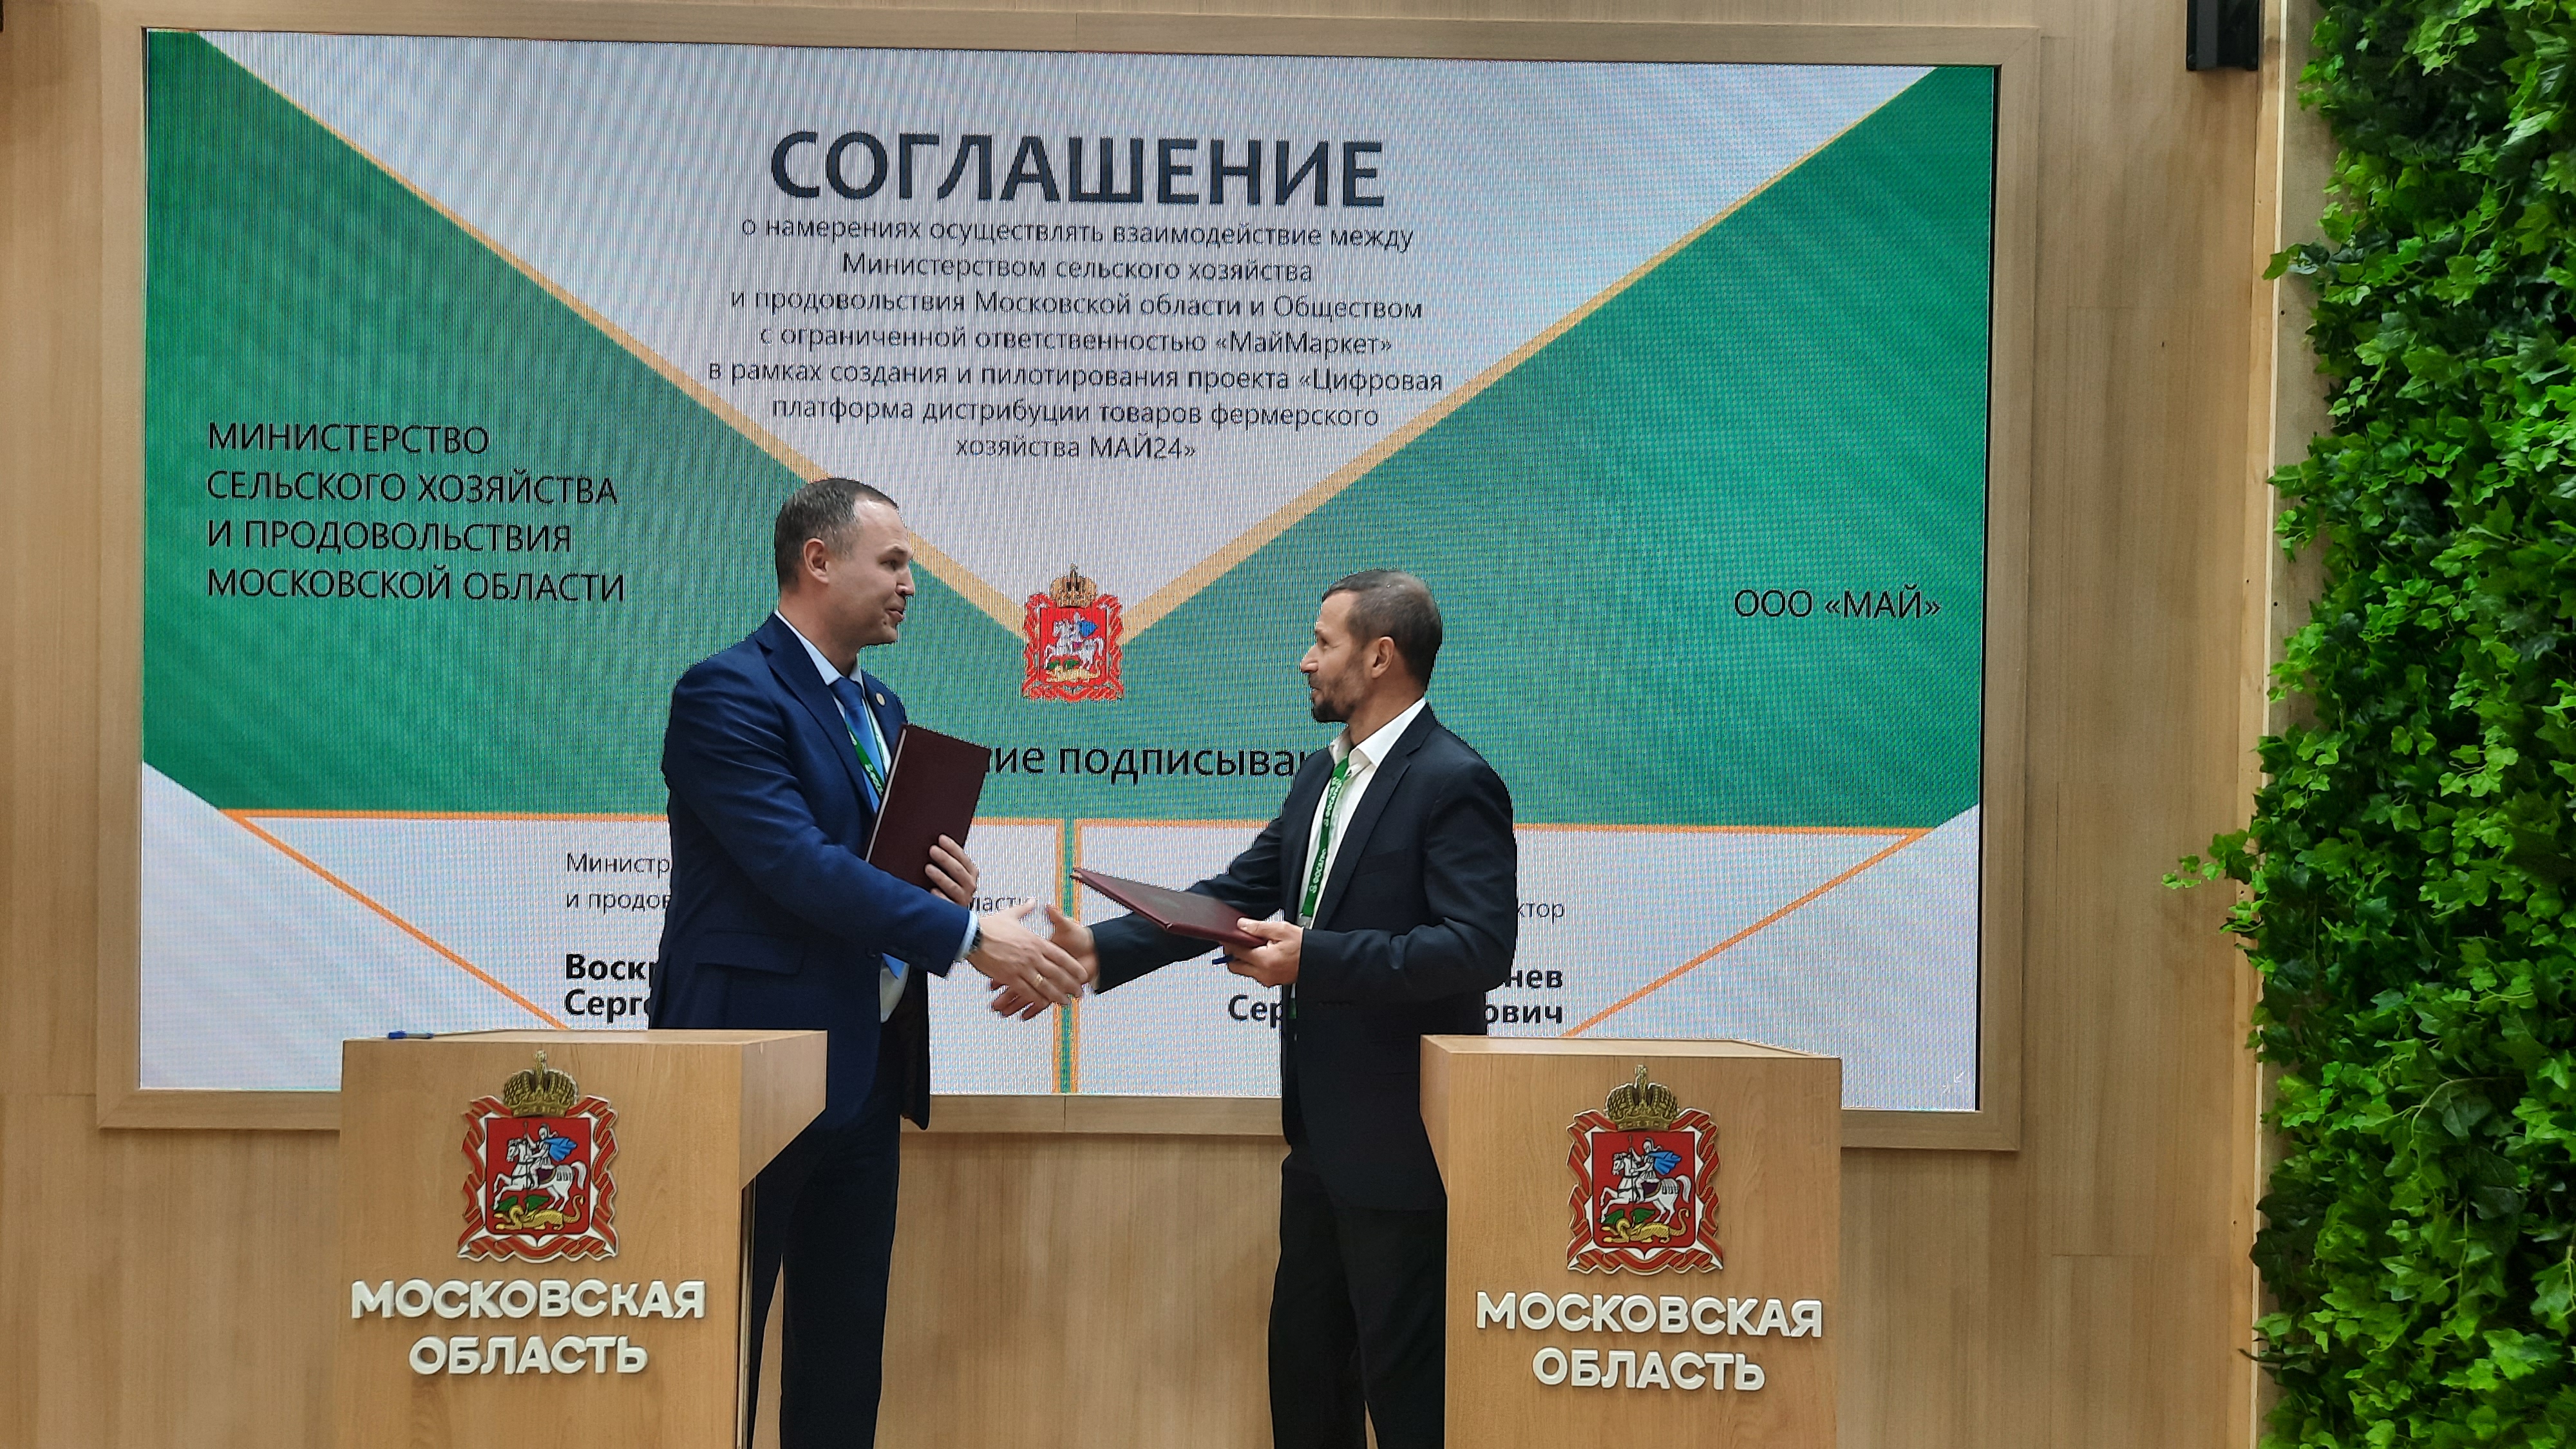 Компания МАЙ и Министерство сельского хозяйства и продовольствия Московской области будут содействовать развитию малого и среднего бизнеса